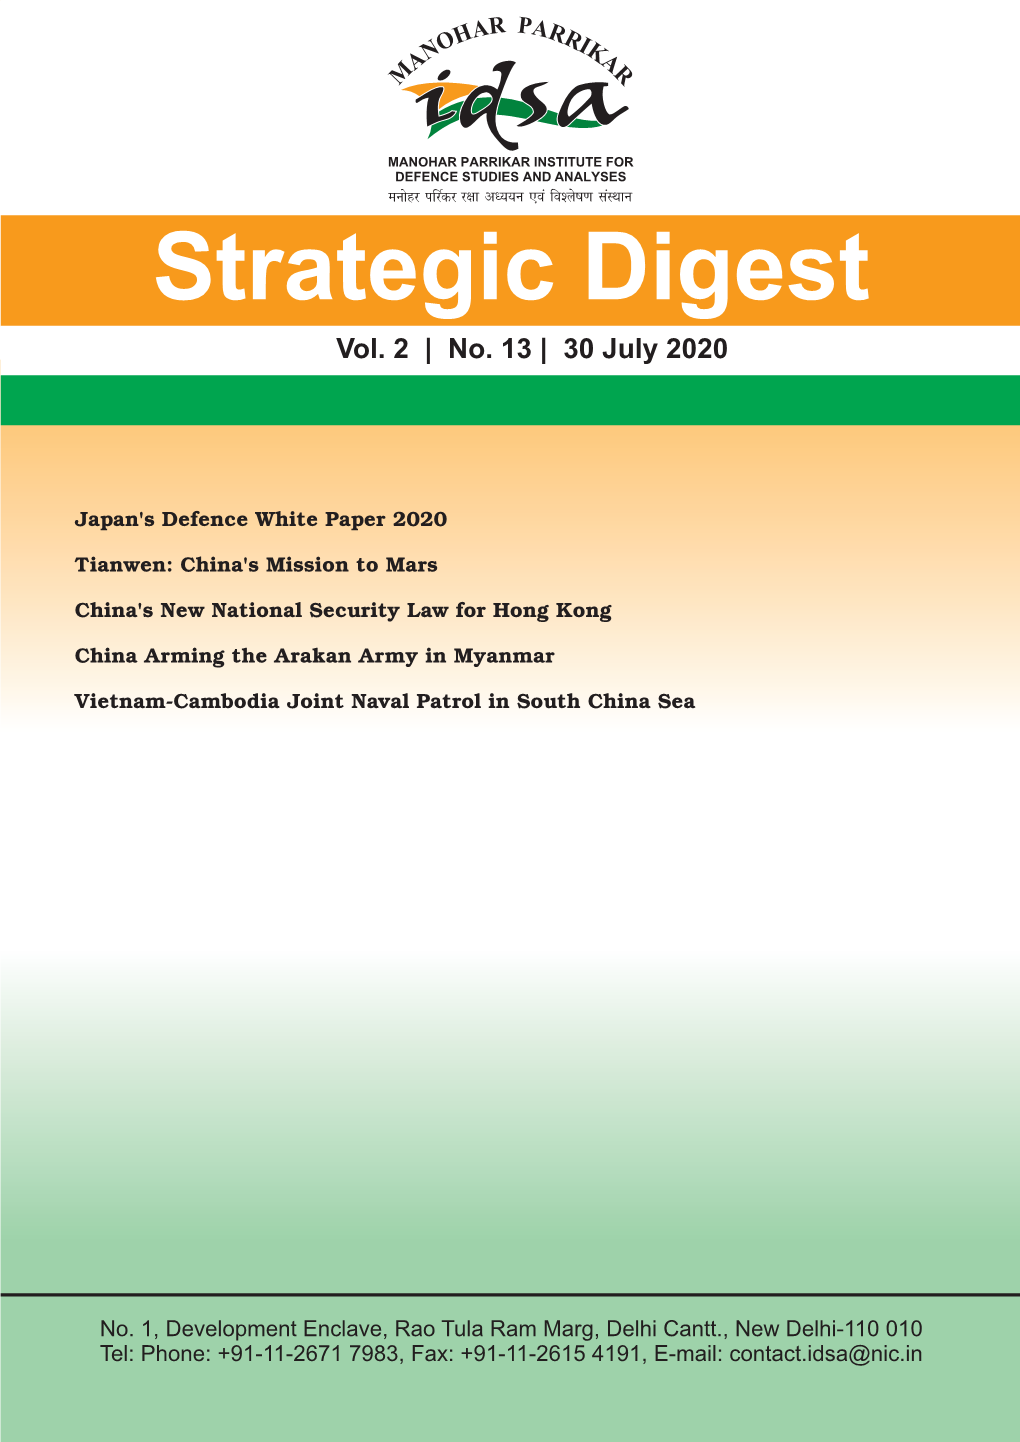 Strategic Digest Vol